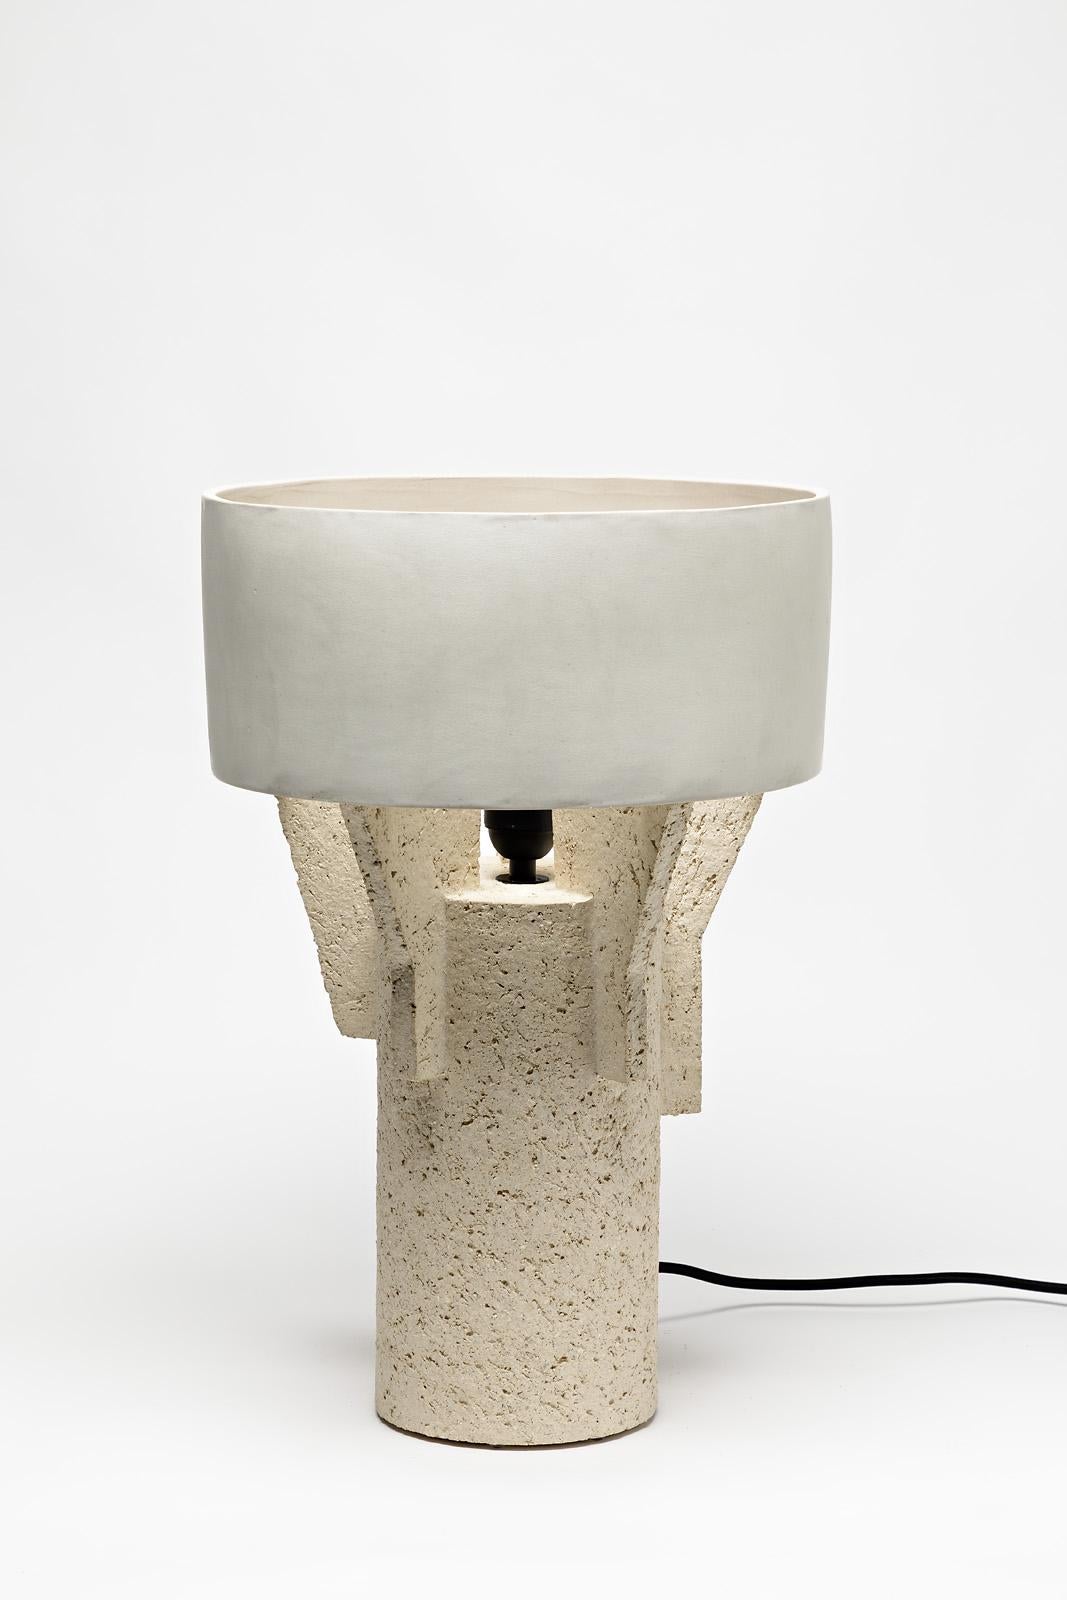 Keramik-Tischlampe von Denis Castaing mit weißer Glasurdekoration, 2019 (Französisch)